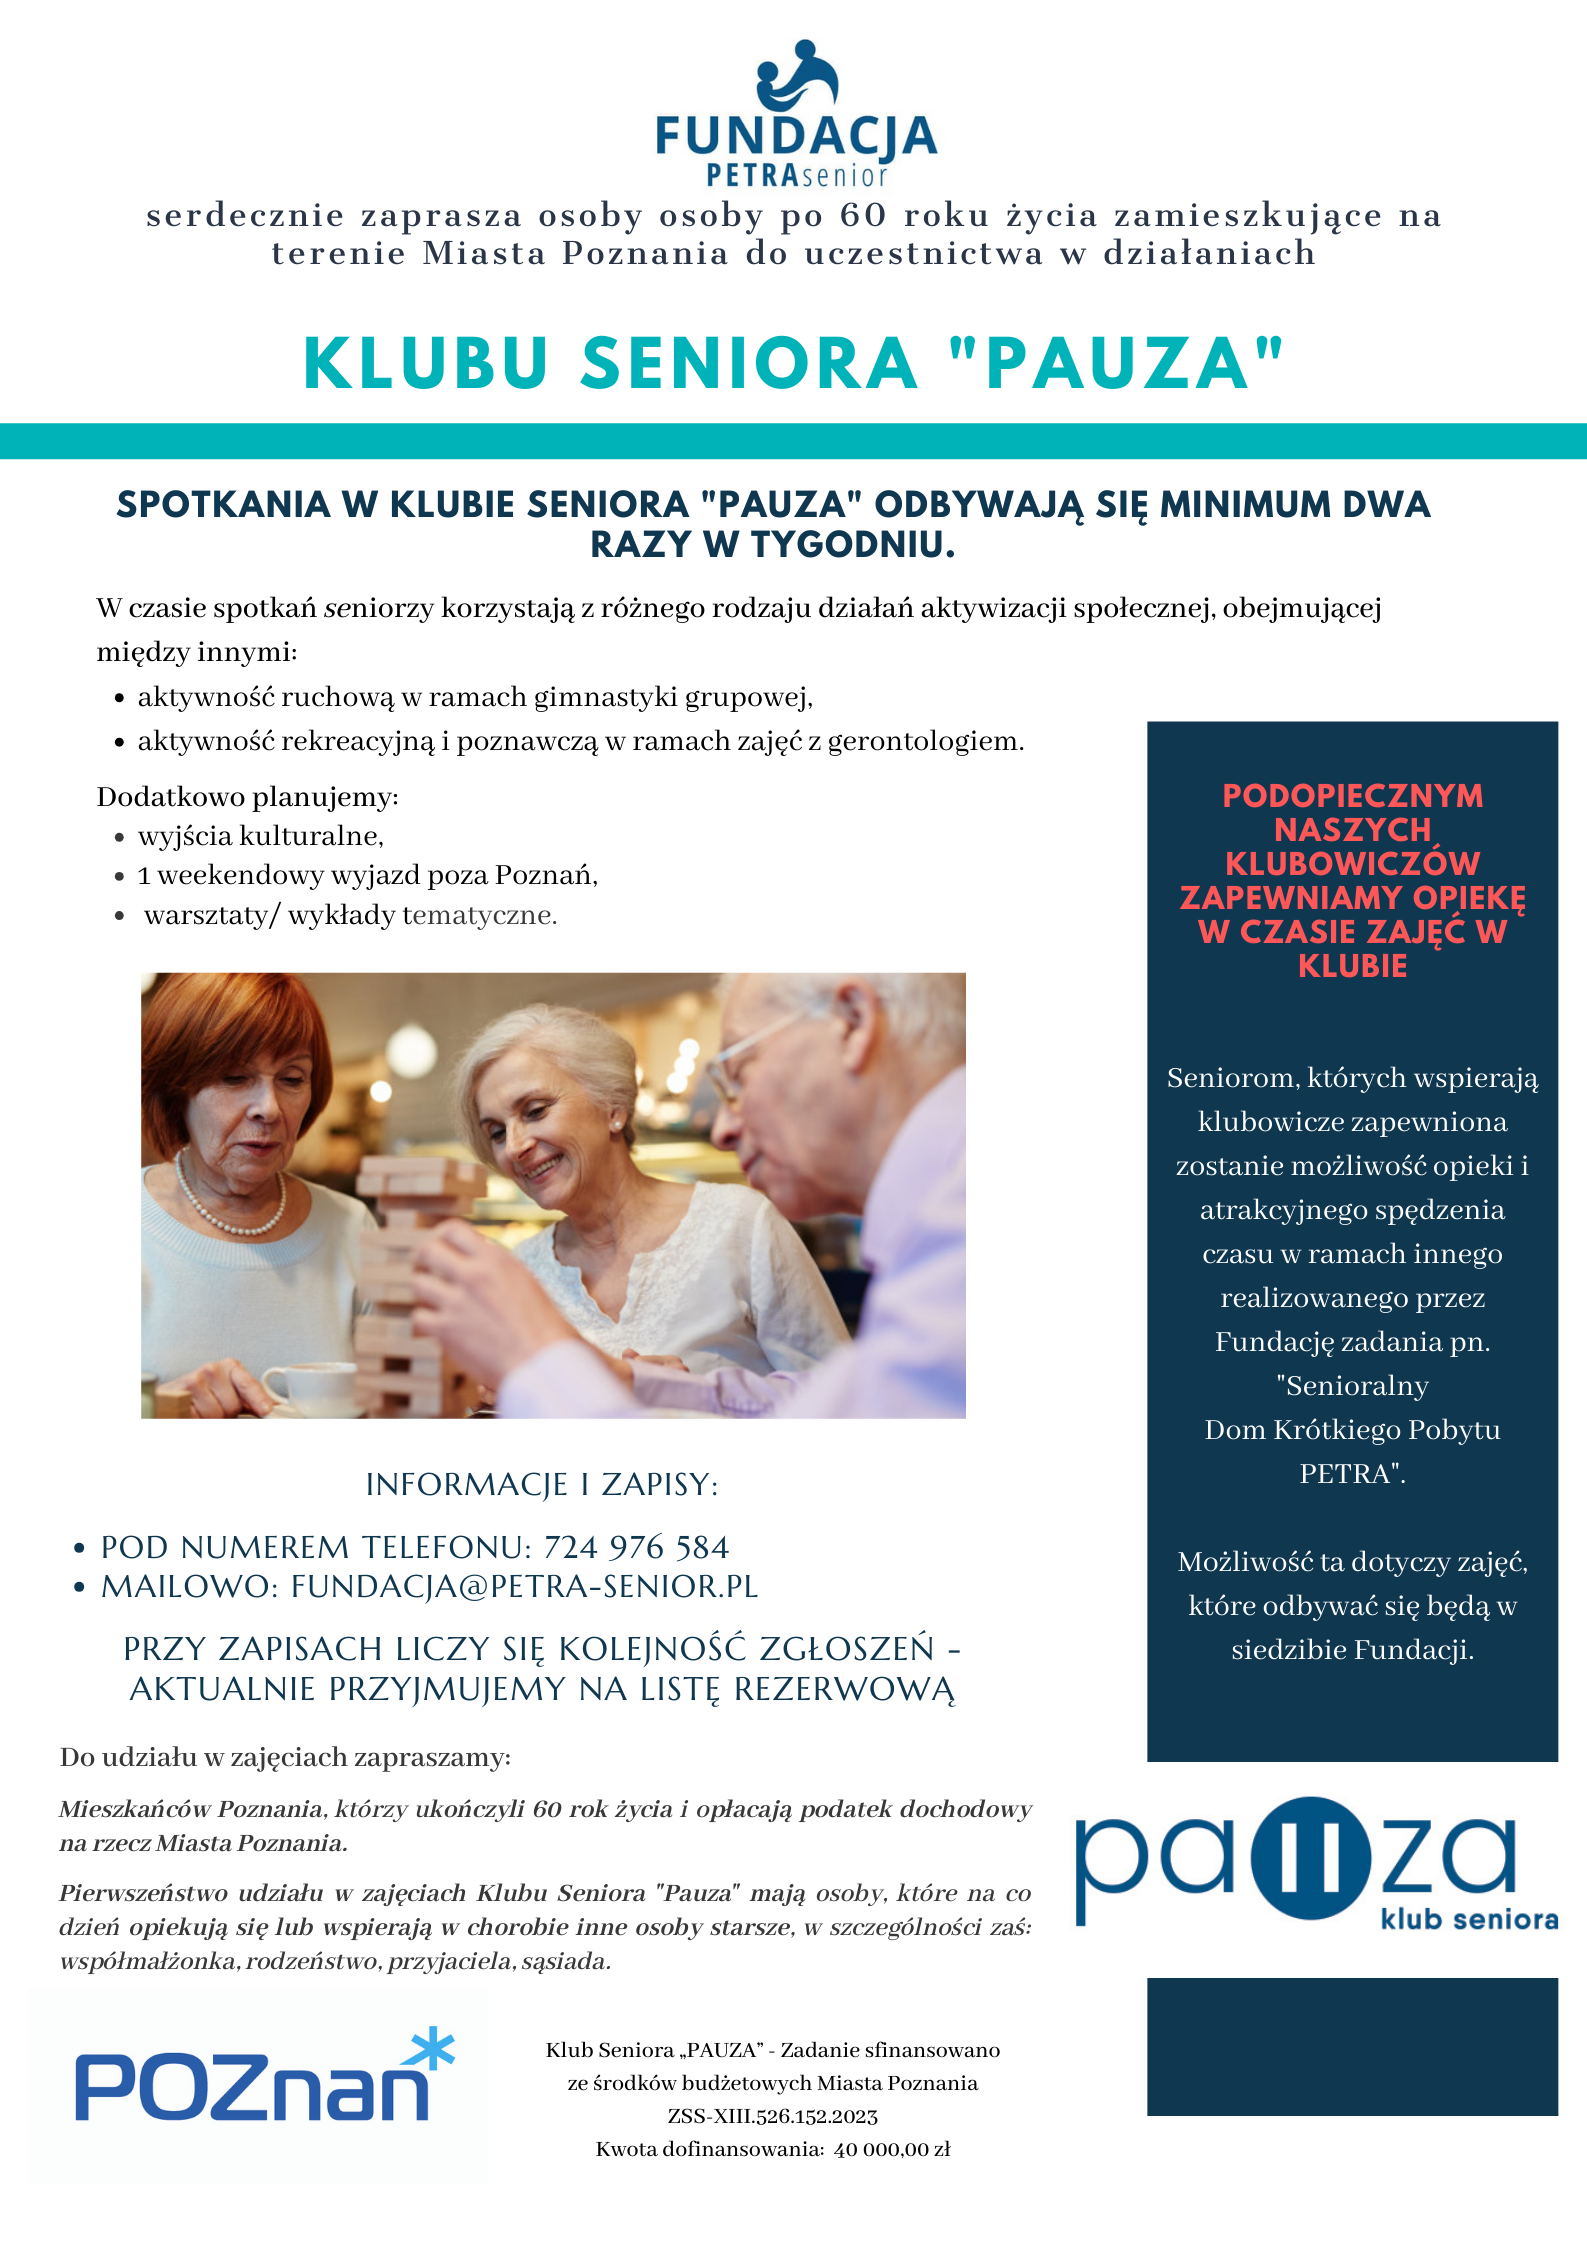 Spotkania w Klubie Seniora "Pauza" odbywają się Minimum dwa razy w tygodniu.